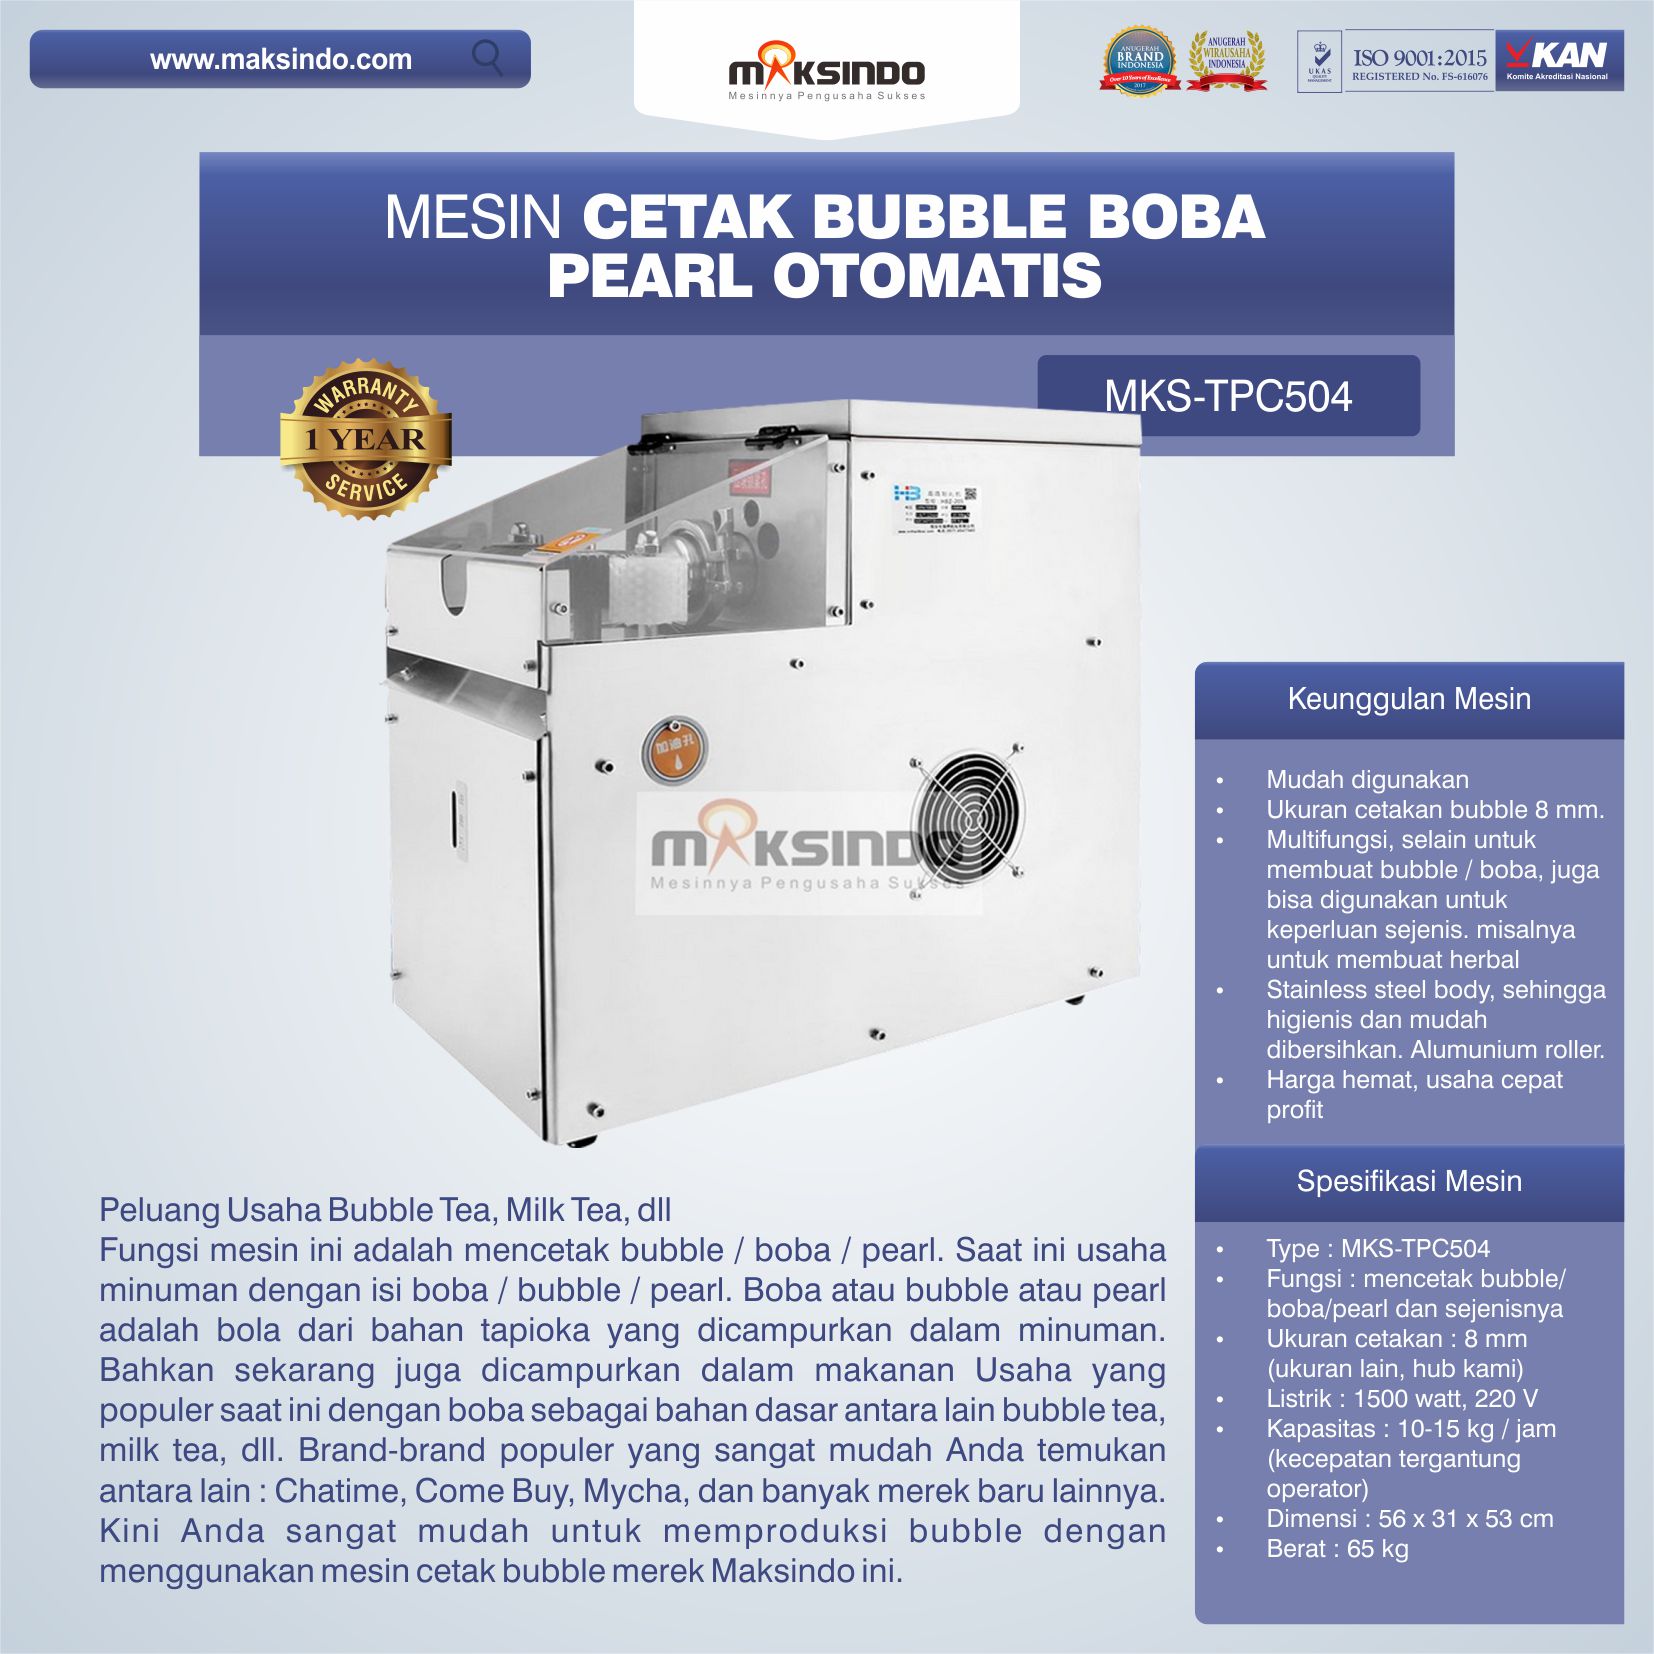 Mesin Cetak Bubble Boba Pearl Otomatis MKS-TPC504